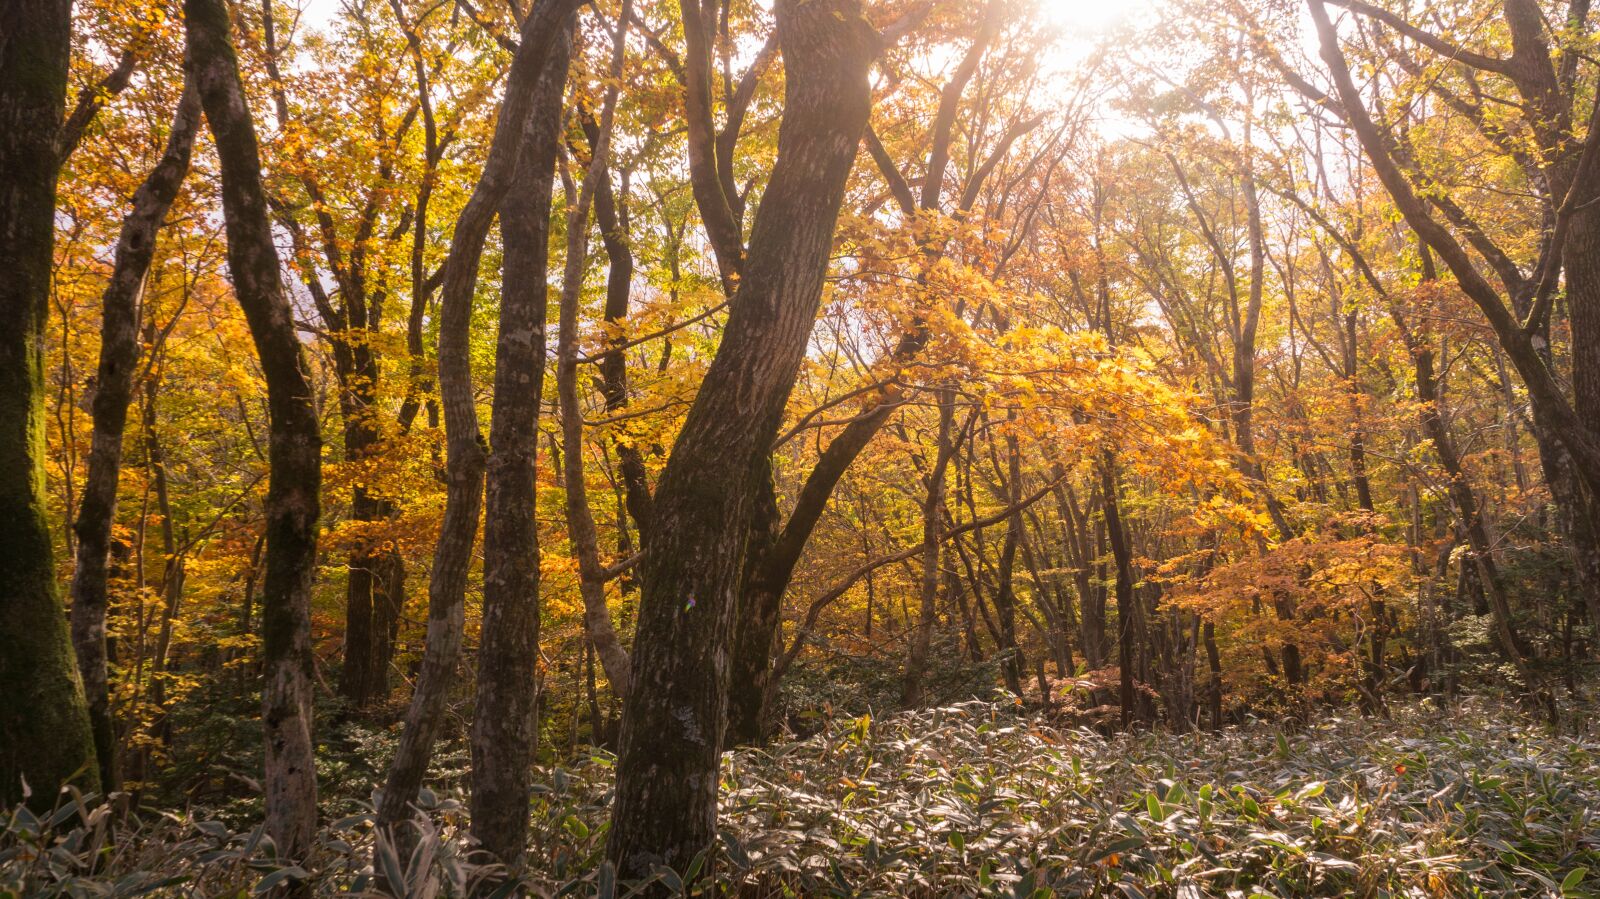 Sony Alpha NEX-5N + Sony E 18-55mm F3.5-5.6 OSS sample photo. Autumn, autumn leaves, wood photography